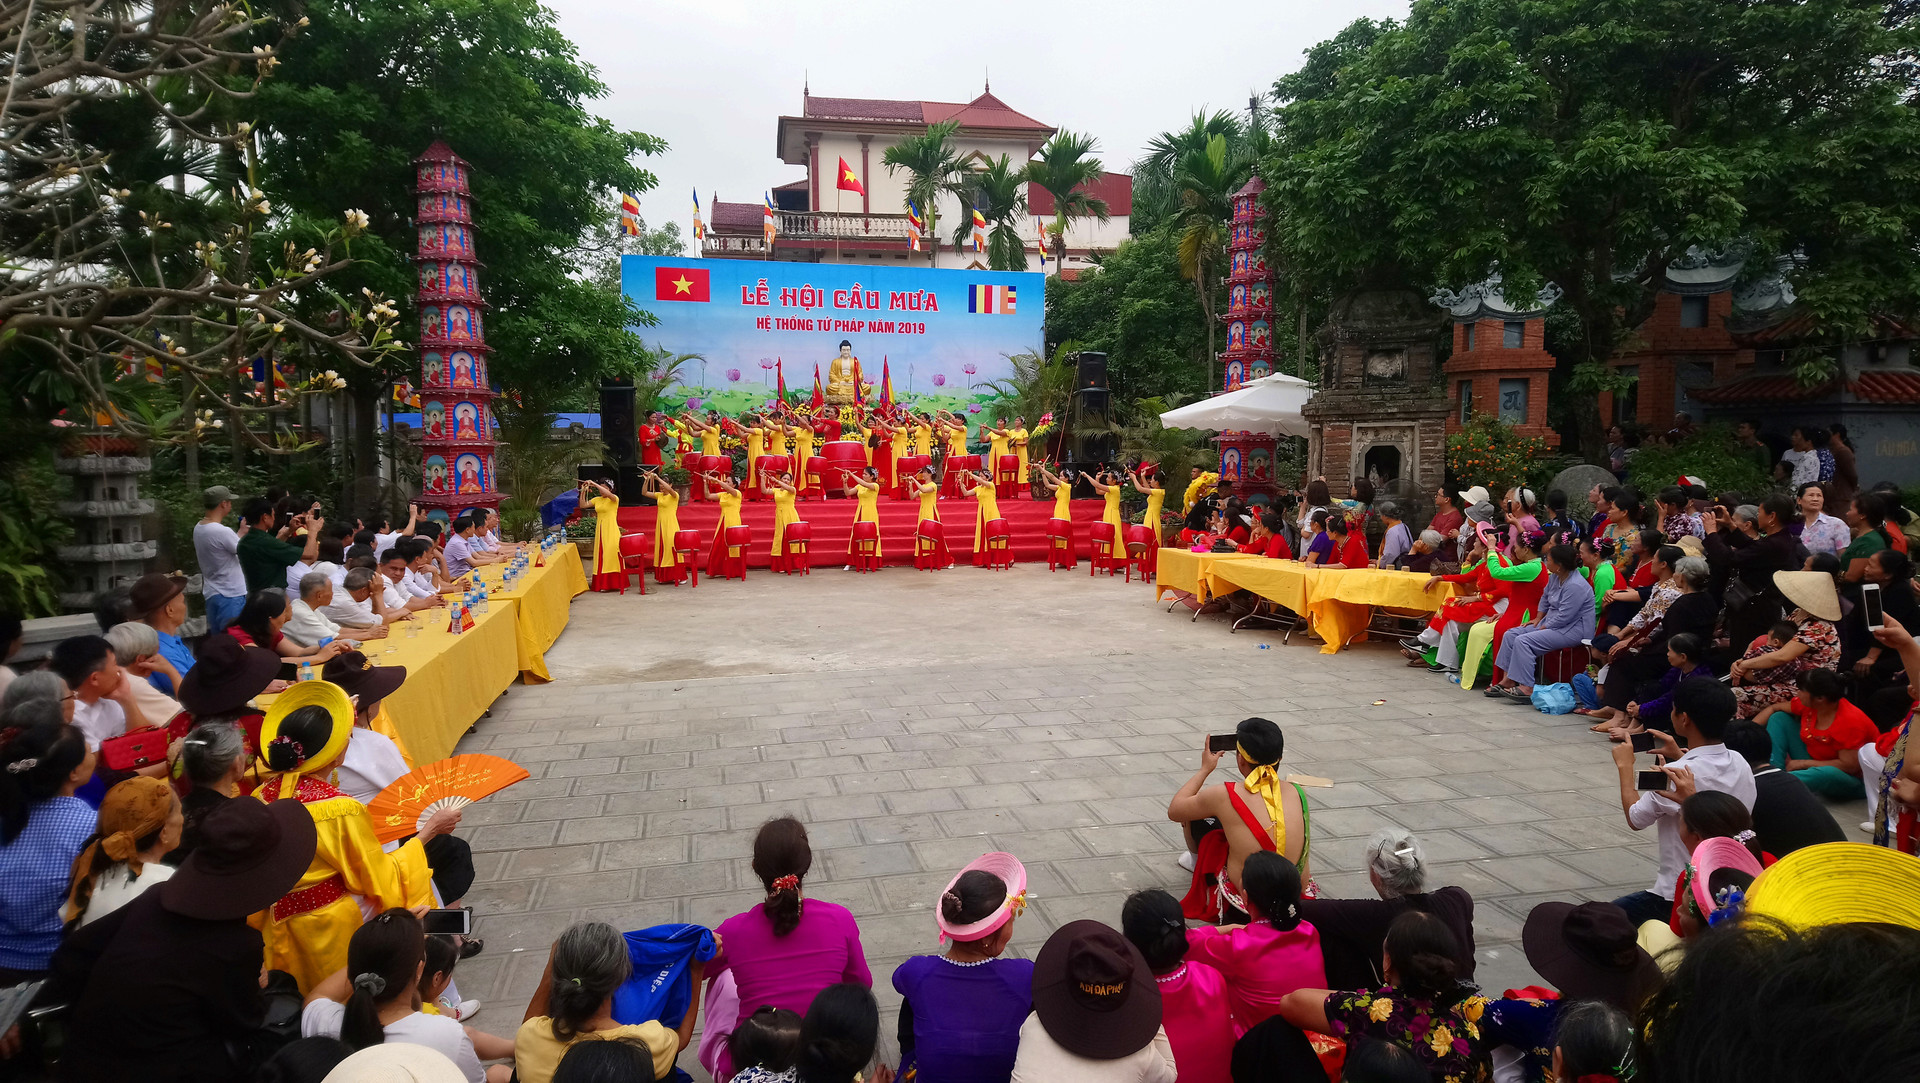 Văn lâm (Hưng Yên): Độc đáo lễ hội cầu mưa